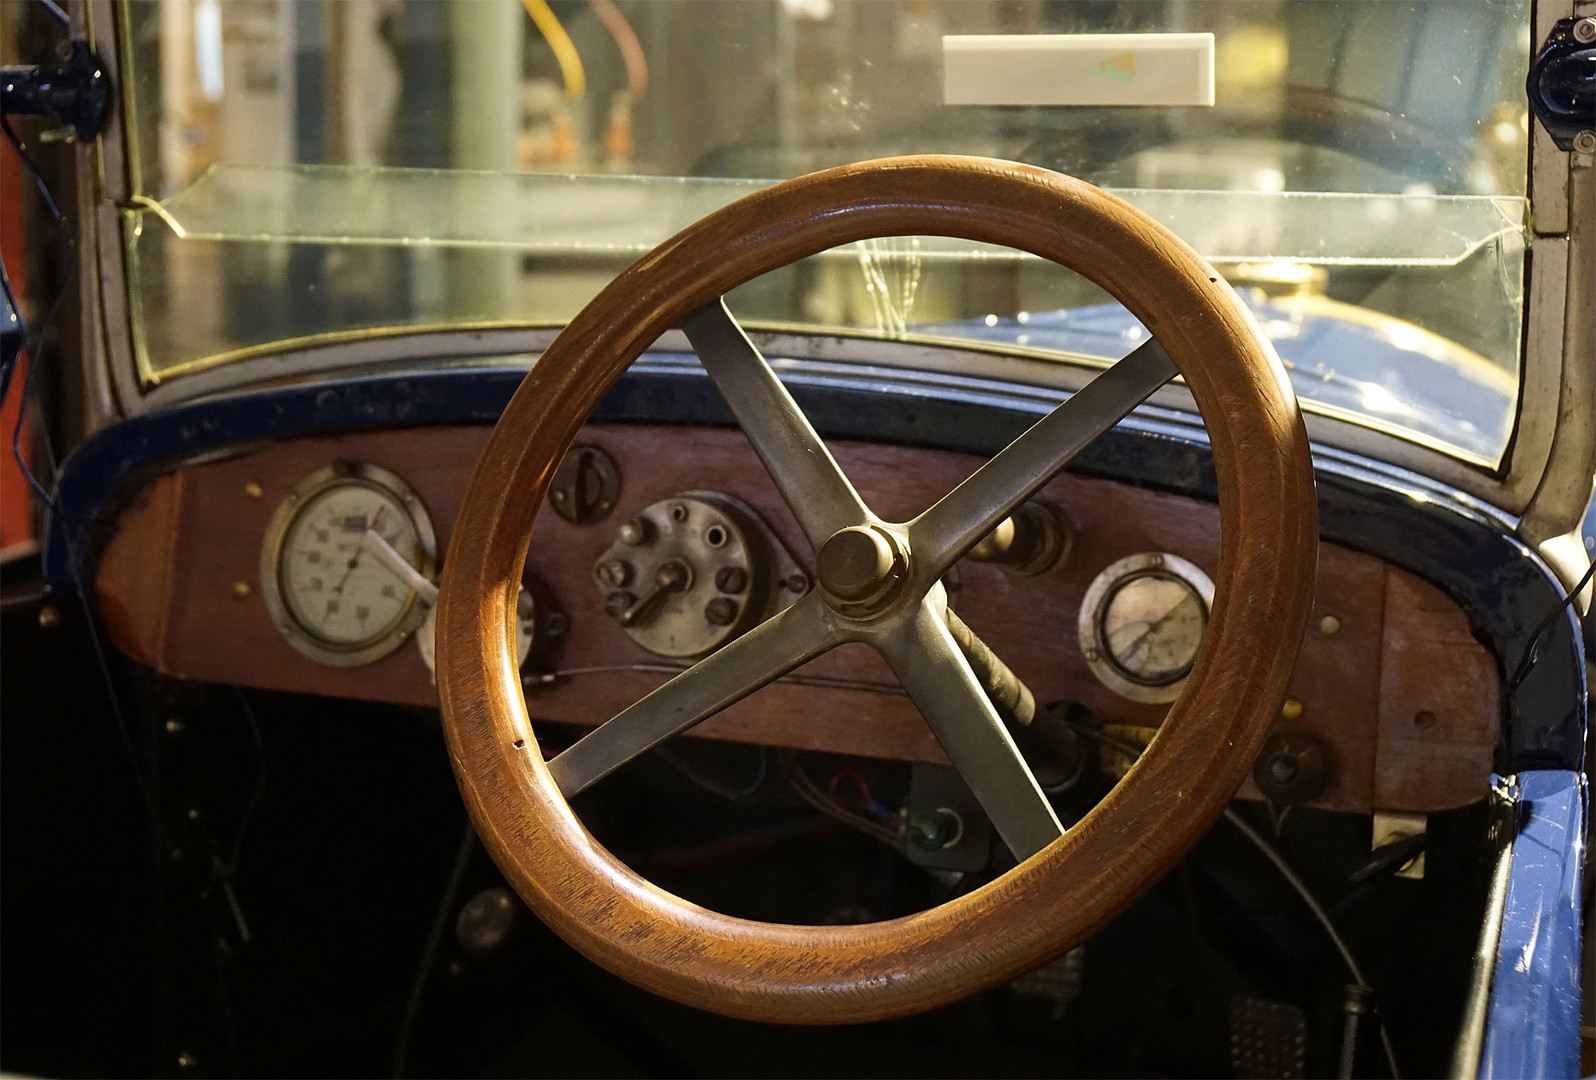 Wie dazumal: Cockpit eines Autos